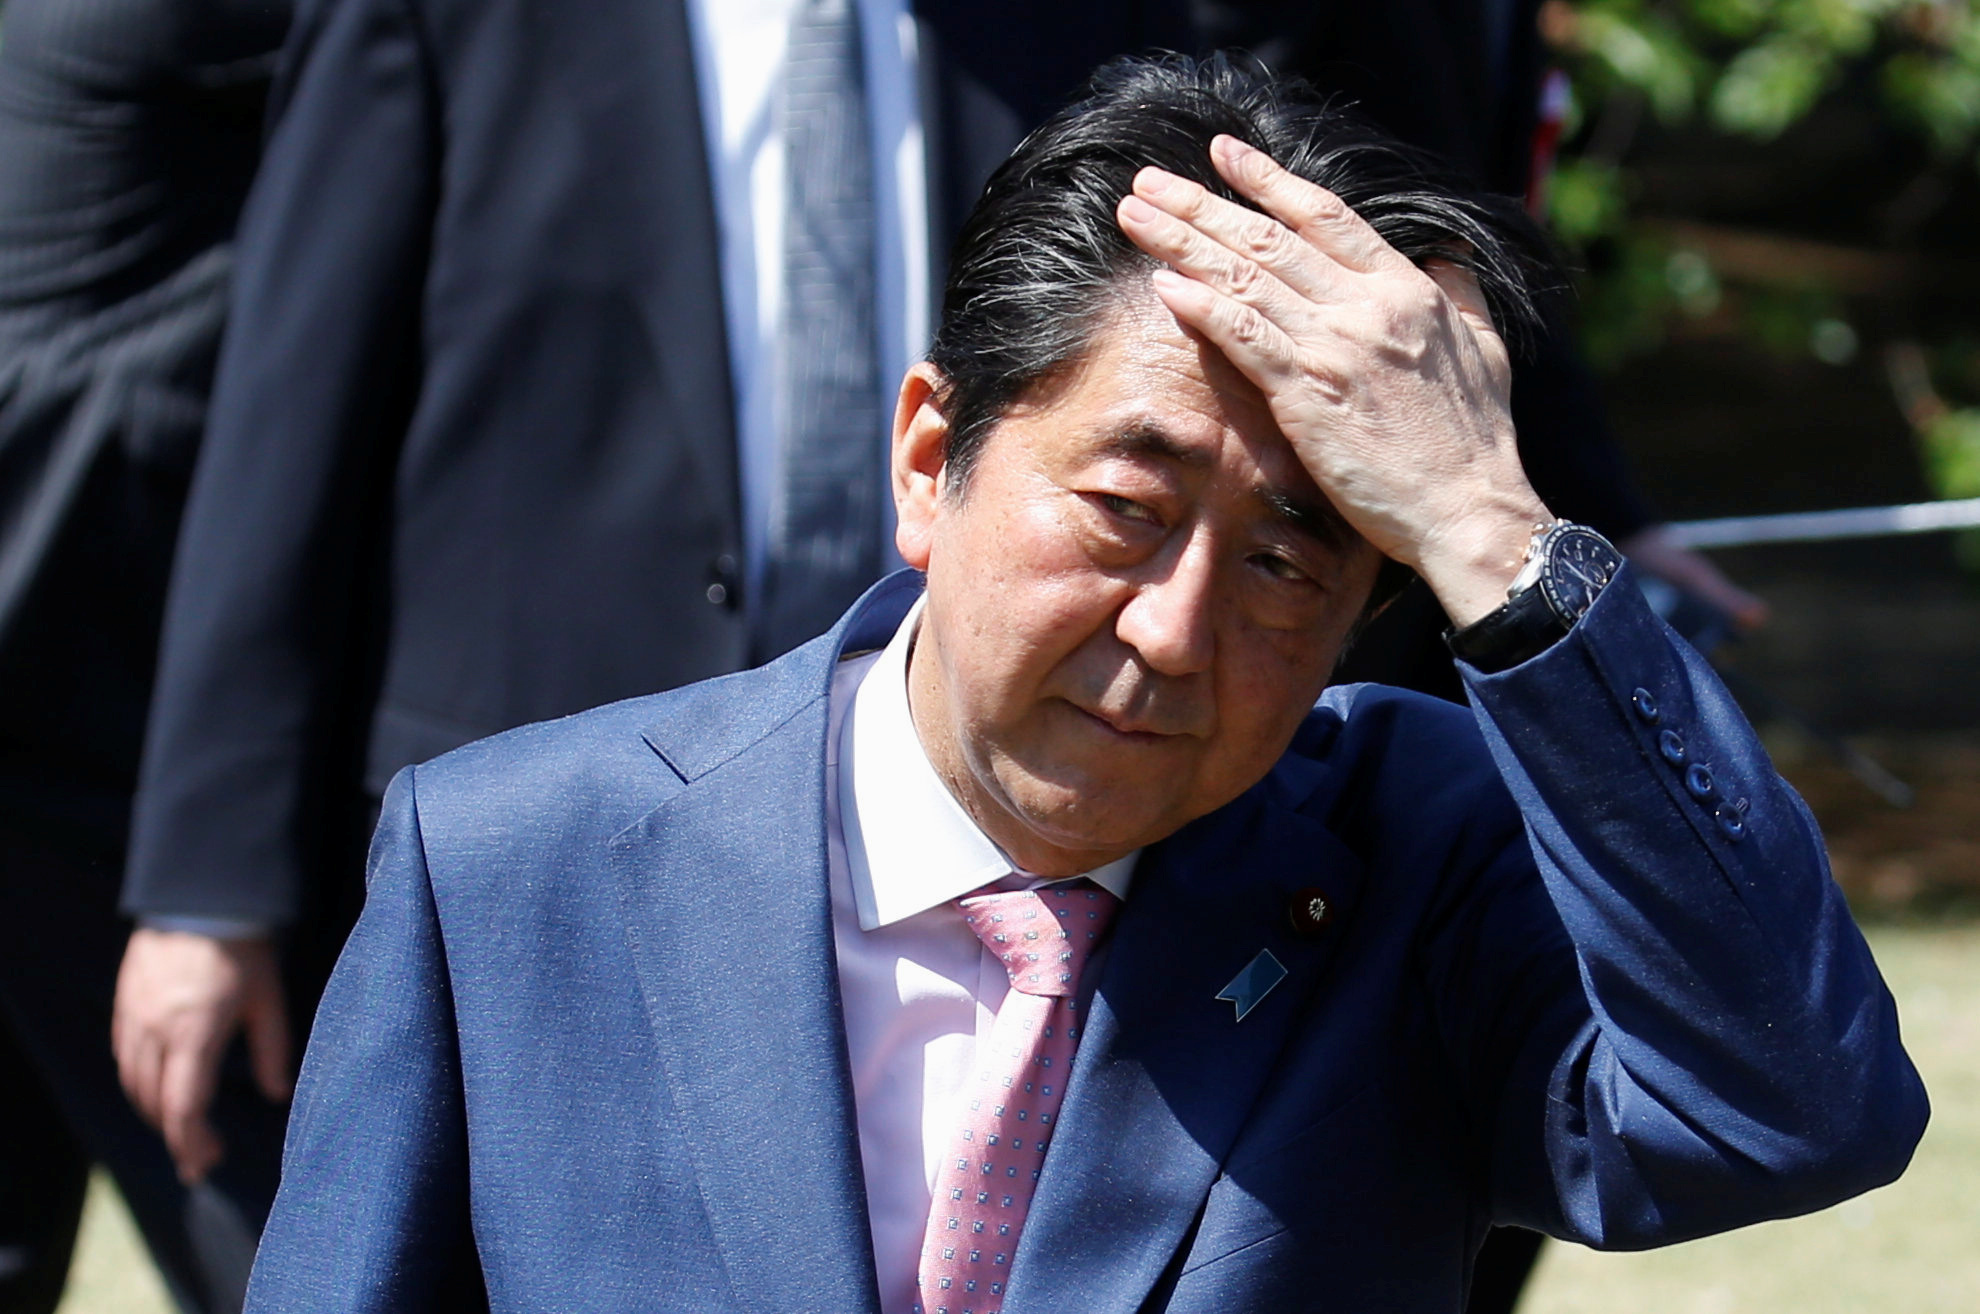 شينزو آبى رئيس الوزراء اليابانى